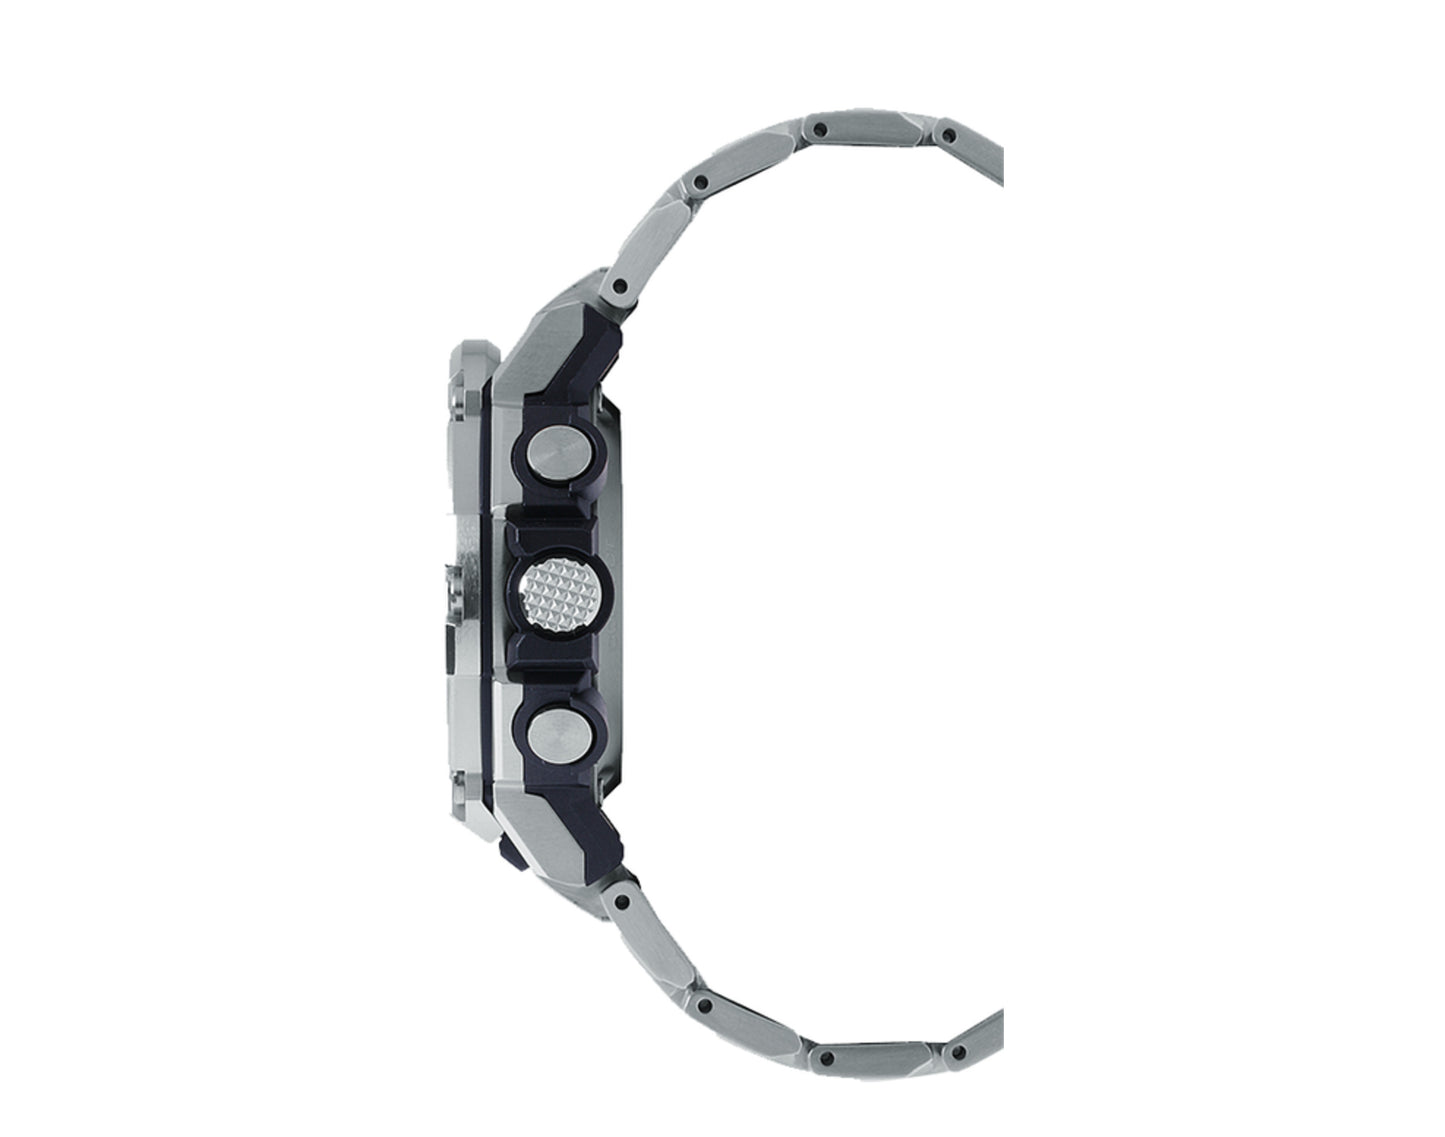 Casio G-Shock GSTB300E G-STEEL Analog-Digital Chrono Steel Watch GSTB300E-5A